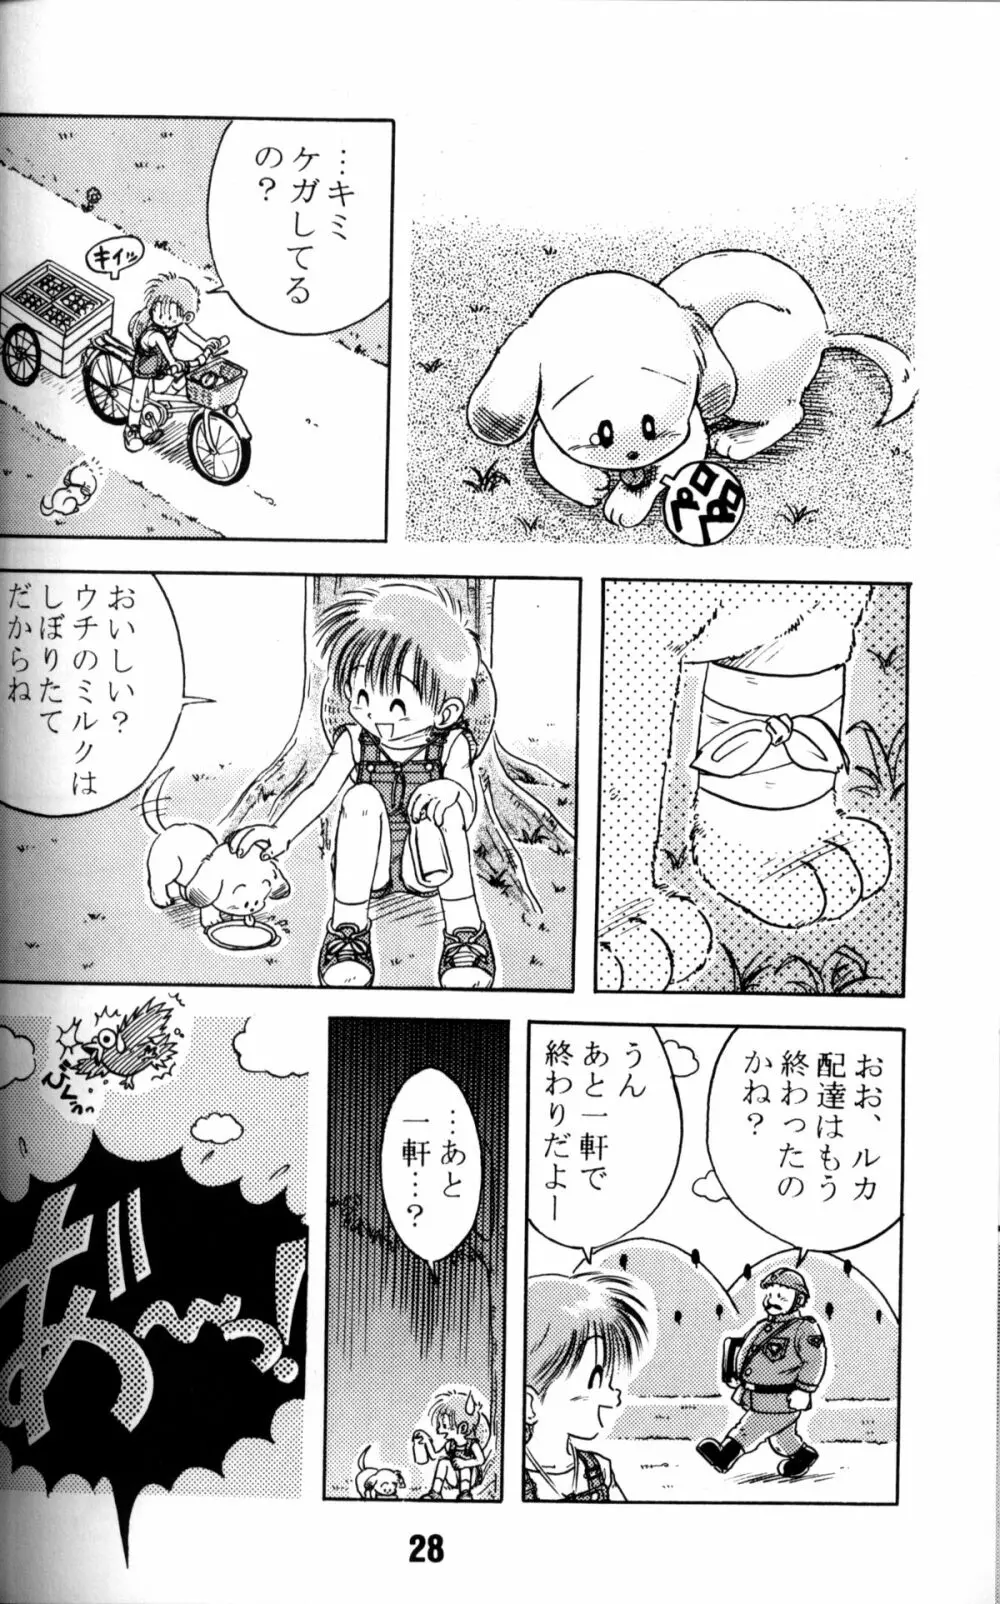 Anthology - Nekketsu Project - Volume 1 'Shounen Banana Milk' - page27